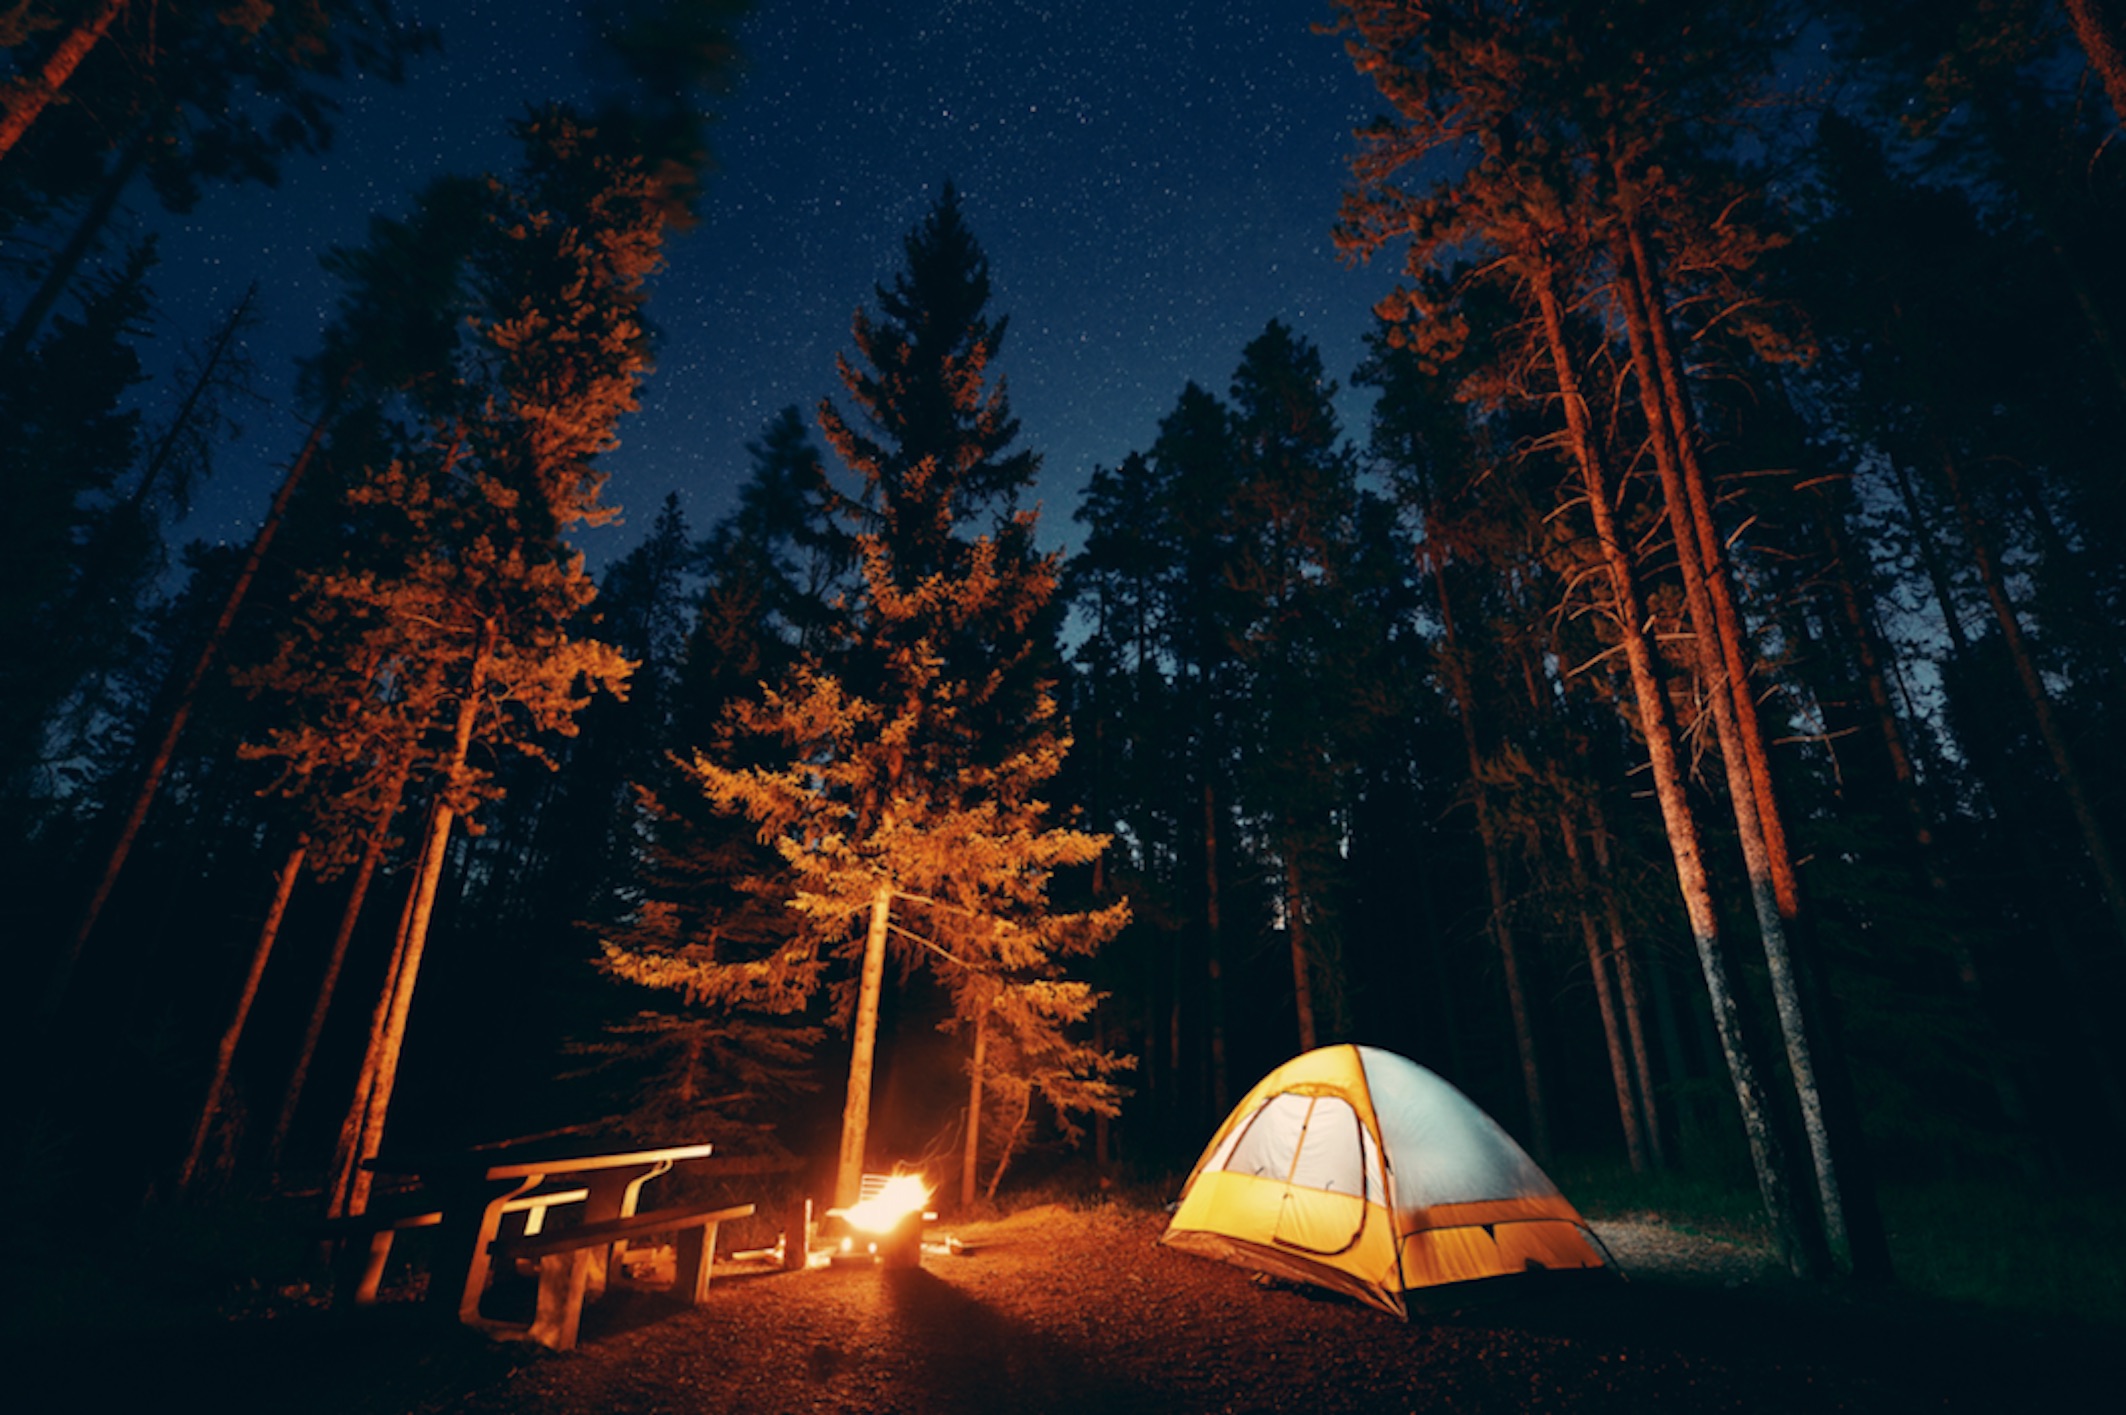 camping trip photos